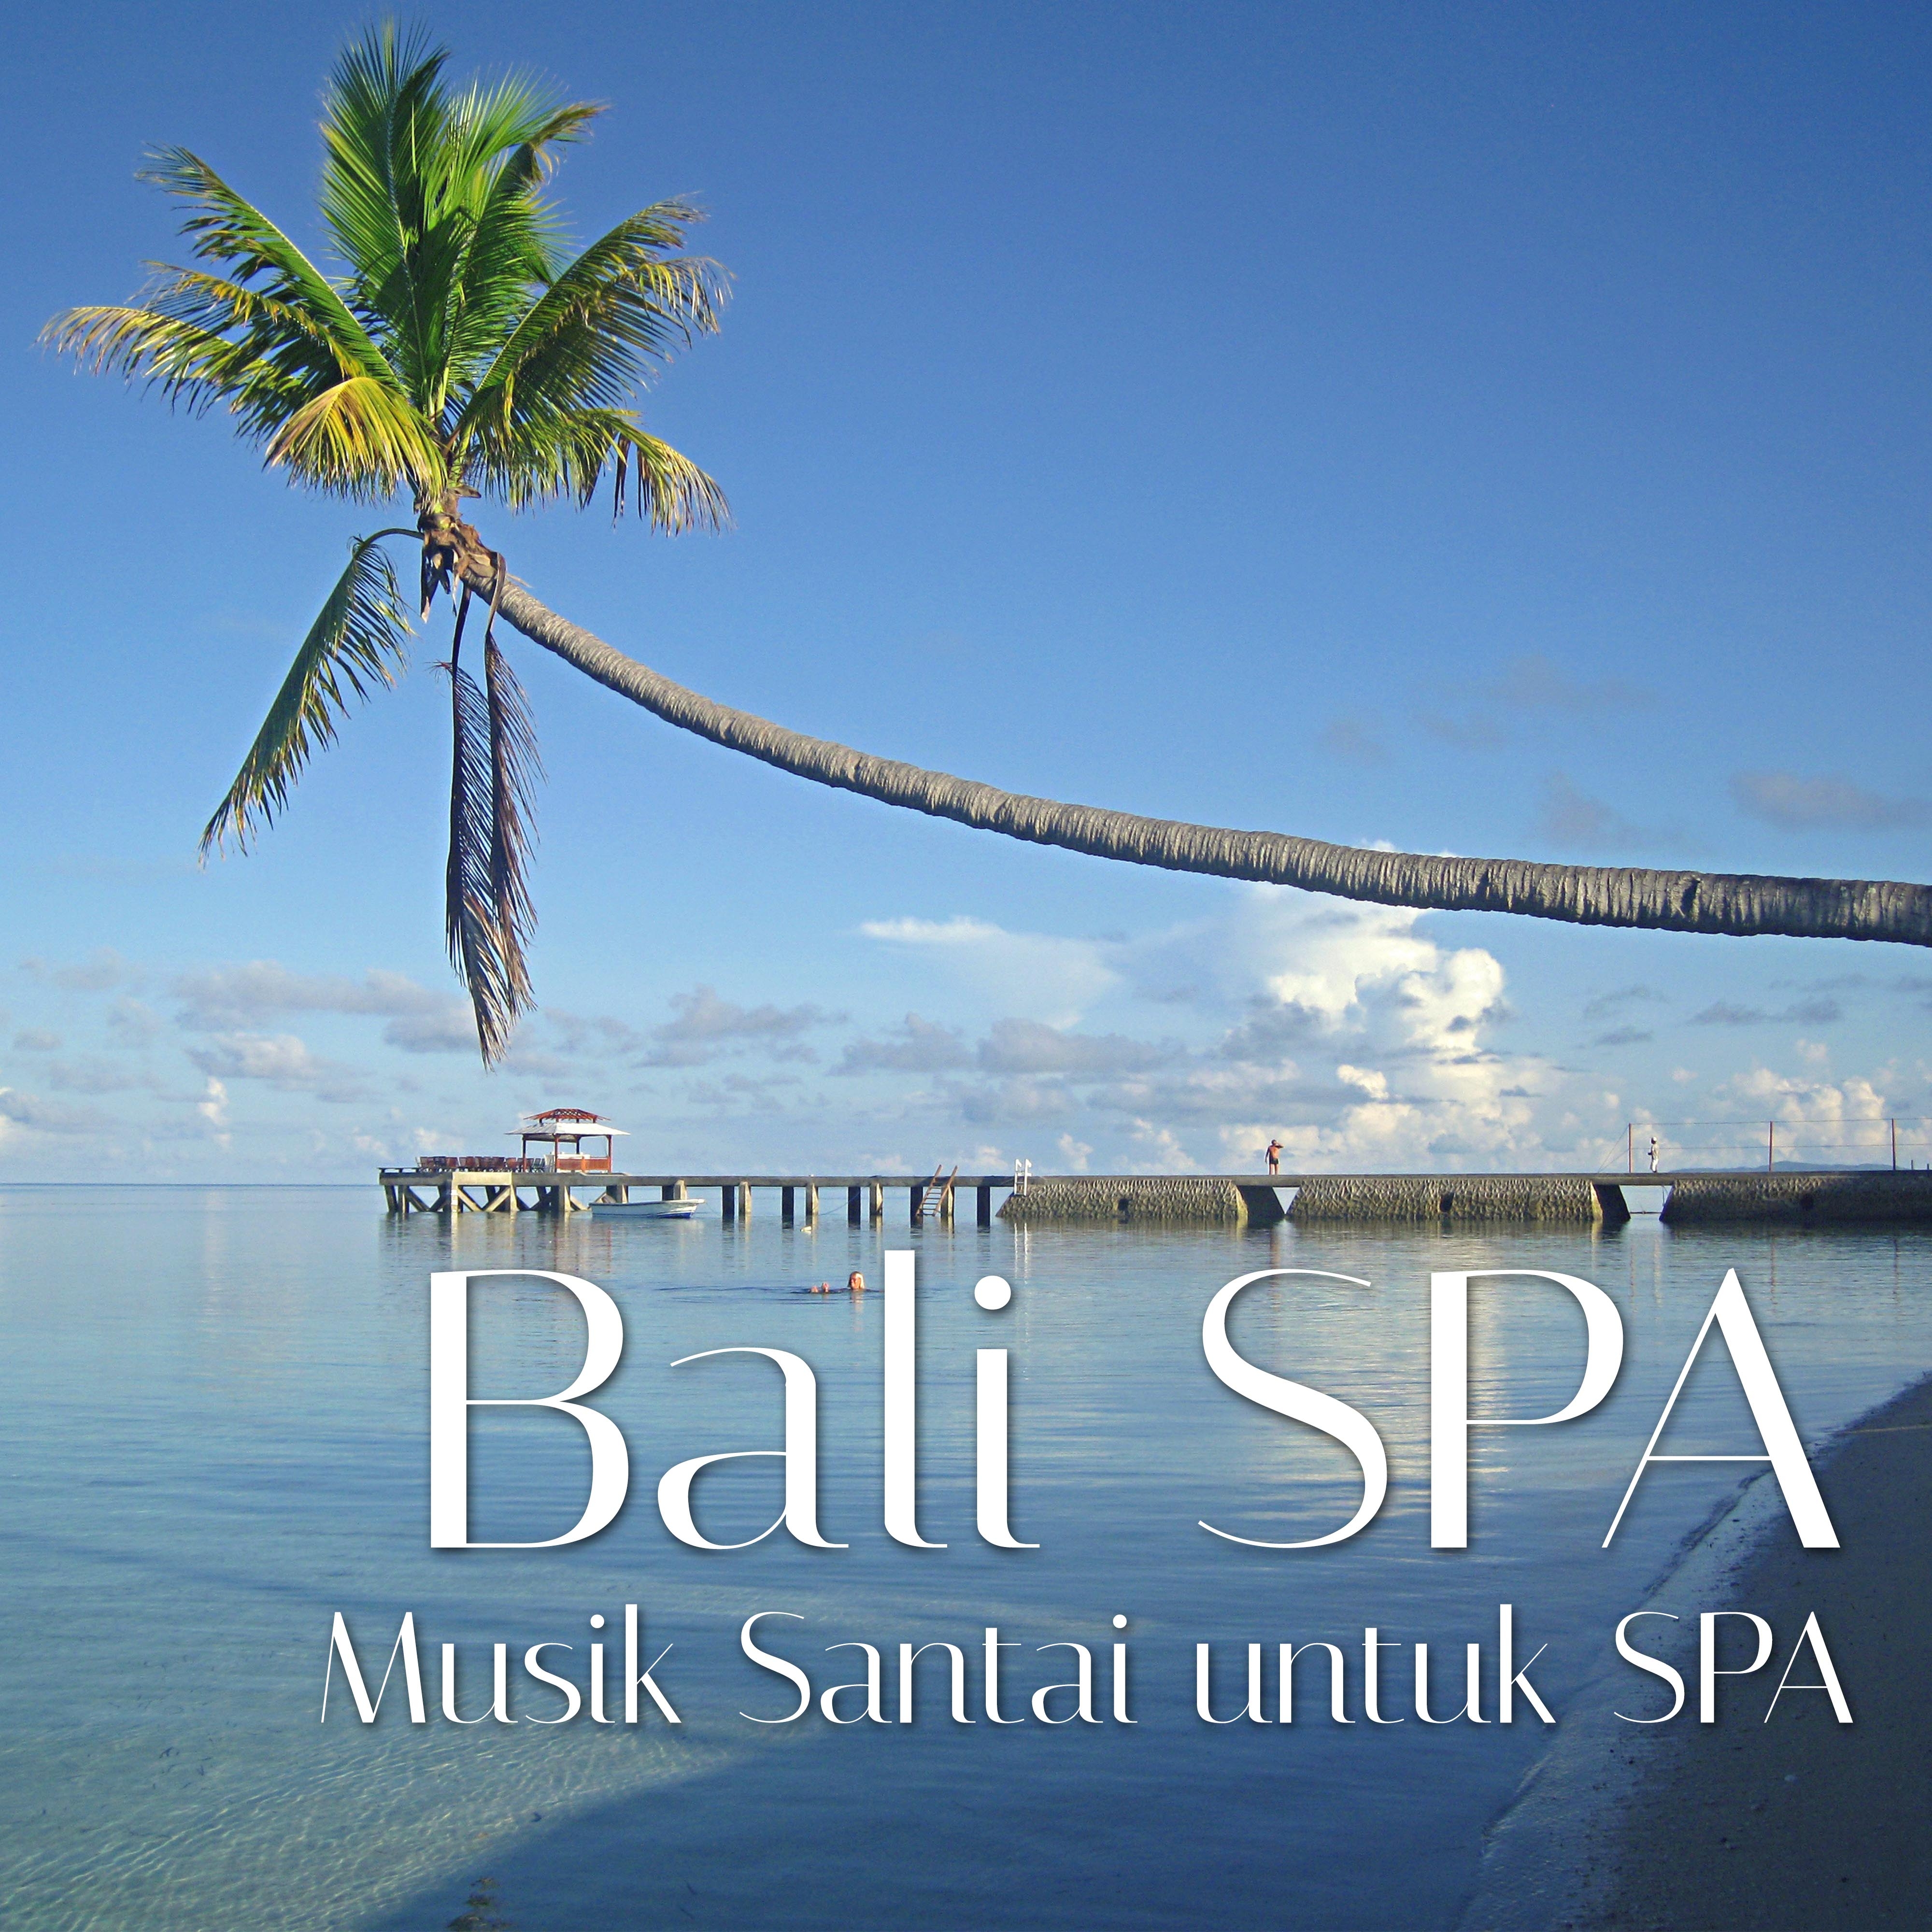 Bali Spa: Musik Santai untuk SPA untuk menemukan Kedamaian dan Ketenangan